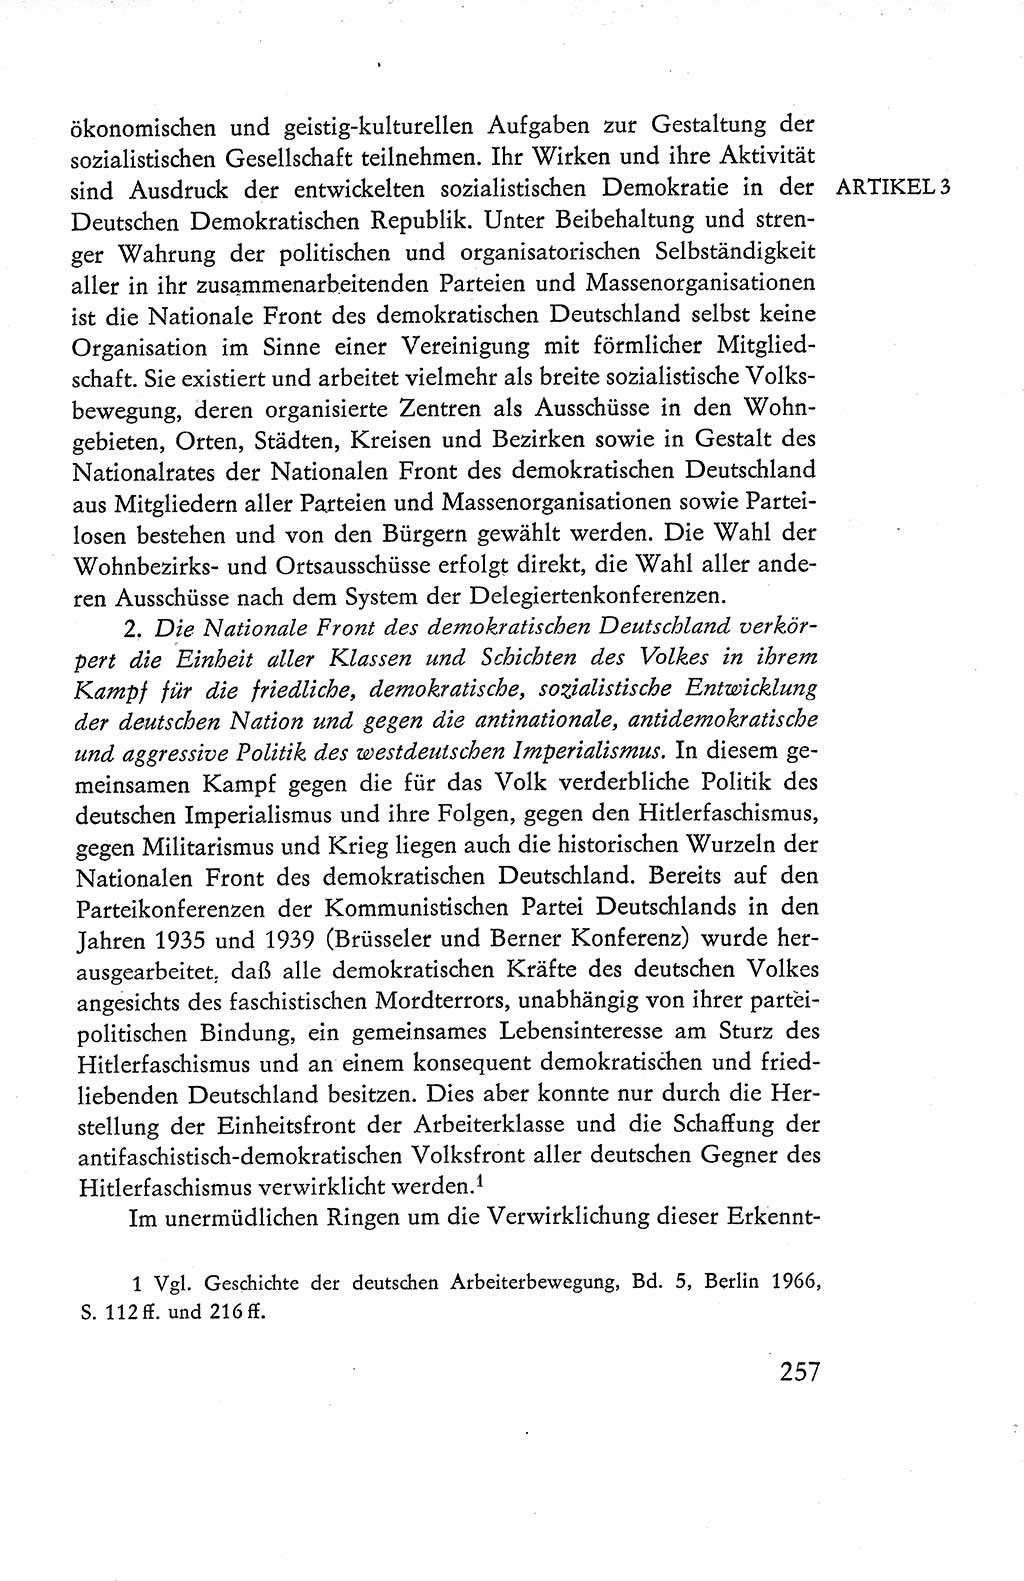 Verfassung der Deutschen Demokratischen Republik (DDR), Dokumente, Kommentar 1969, Band 1, Seite 257 (Verf. DDR Dok. Komm. 1969, Bd. 1, S. 257)